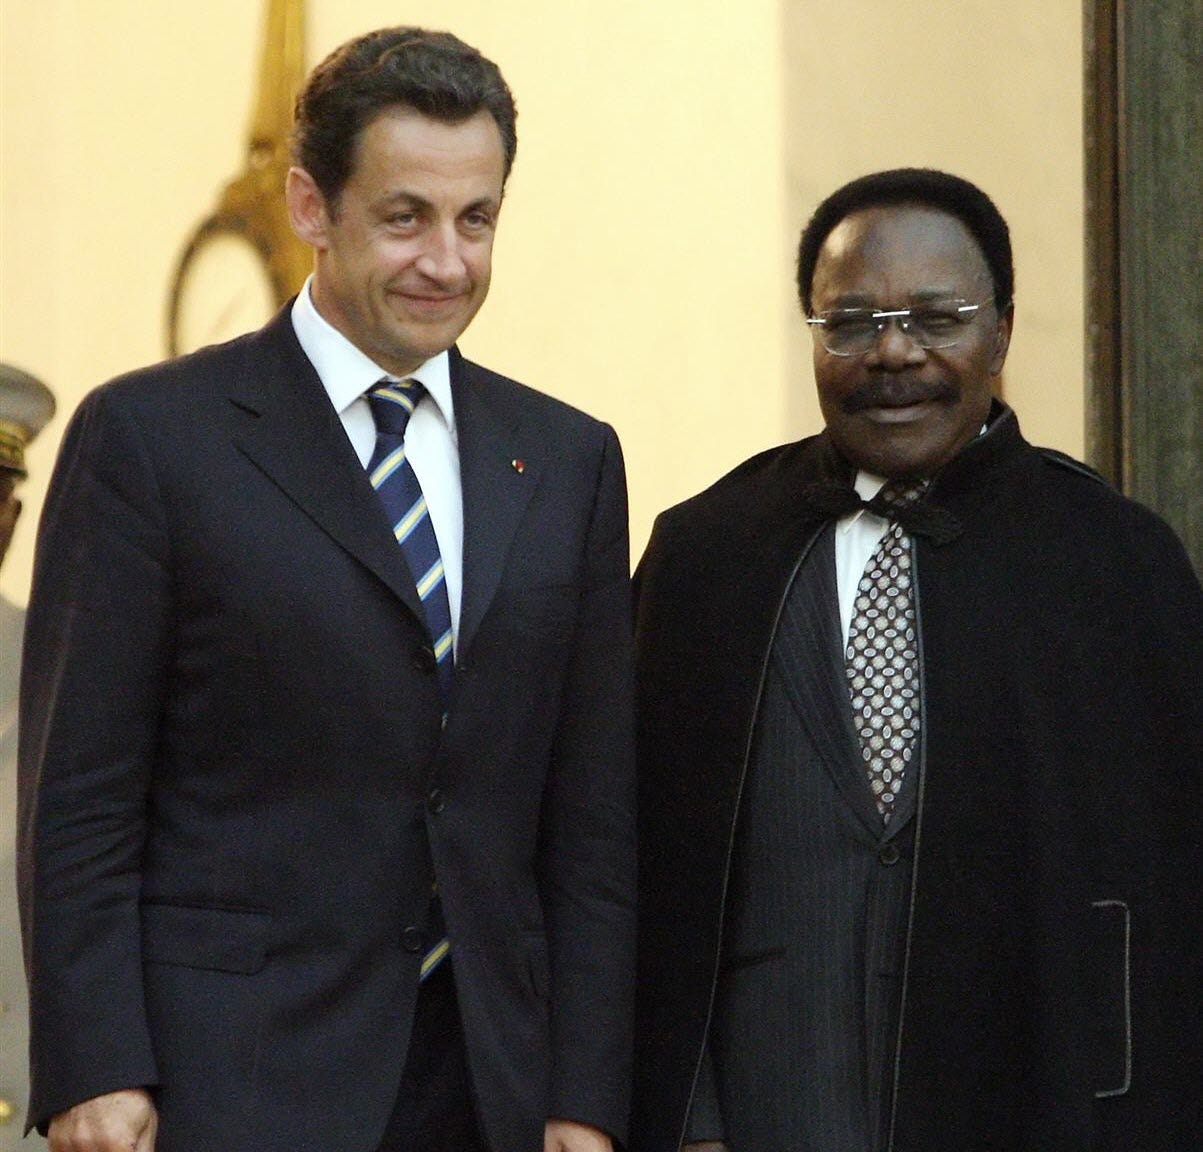 Politique. Hier, la présidence française se refusait à tout commentaire..  Bongo aurait financé la campagne de Sarkozy